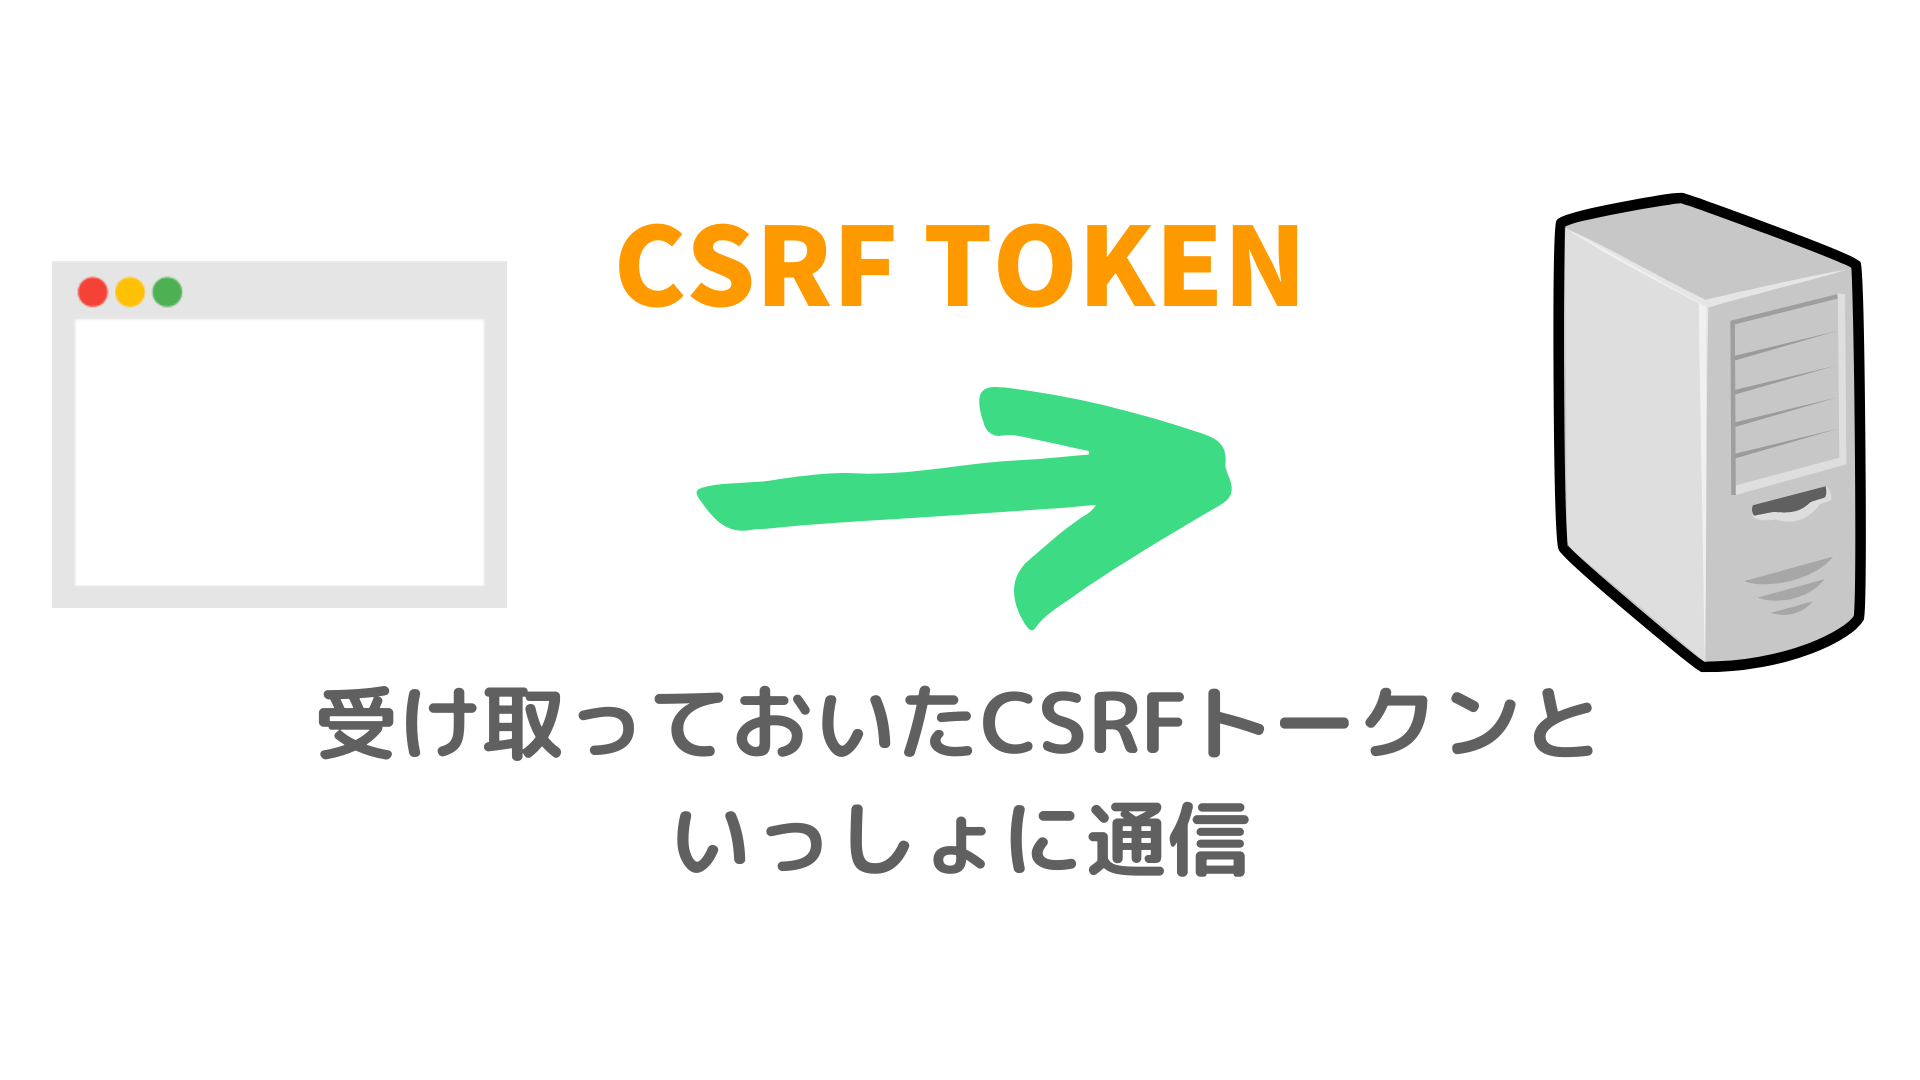 CSRFと一緒に通信する仕組み